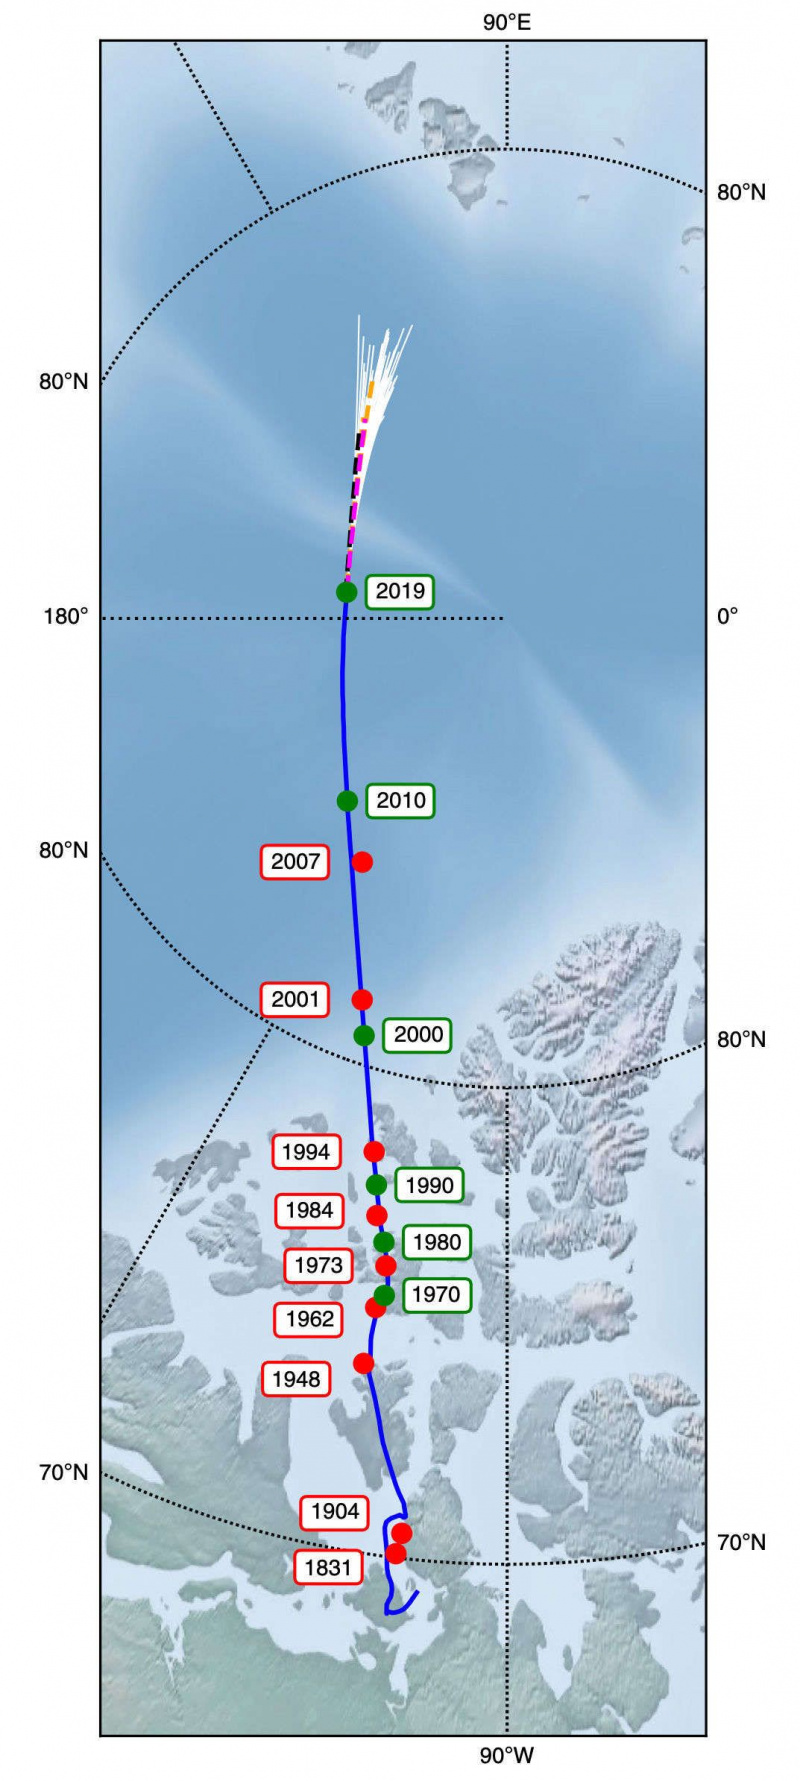 Jordens magnetpol vandrer mens krefter dypt under jorden samhandler. Modeller viser den forutsagte posisjonen etter 2019 (de divergerende hvite linjene øverst). Kreditt: Livermore et al.